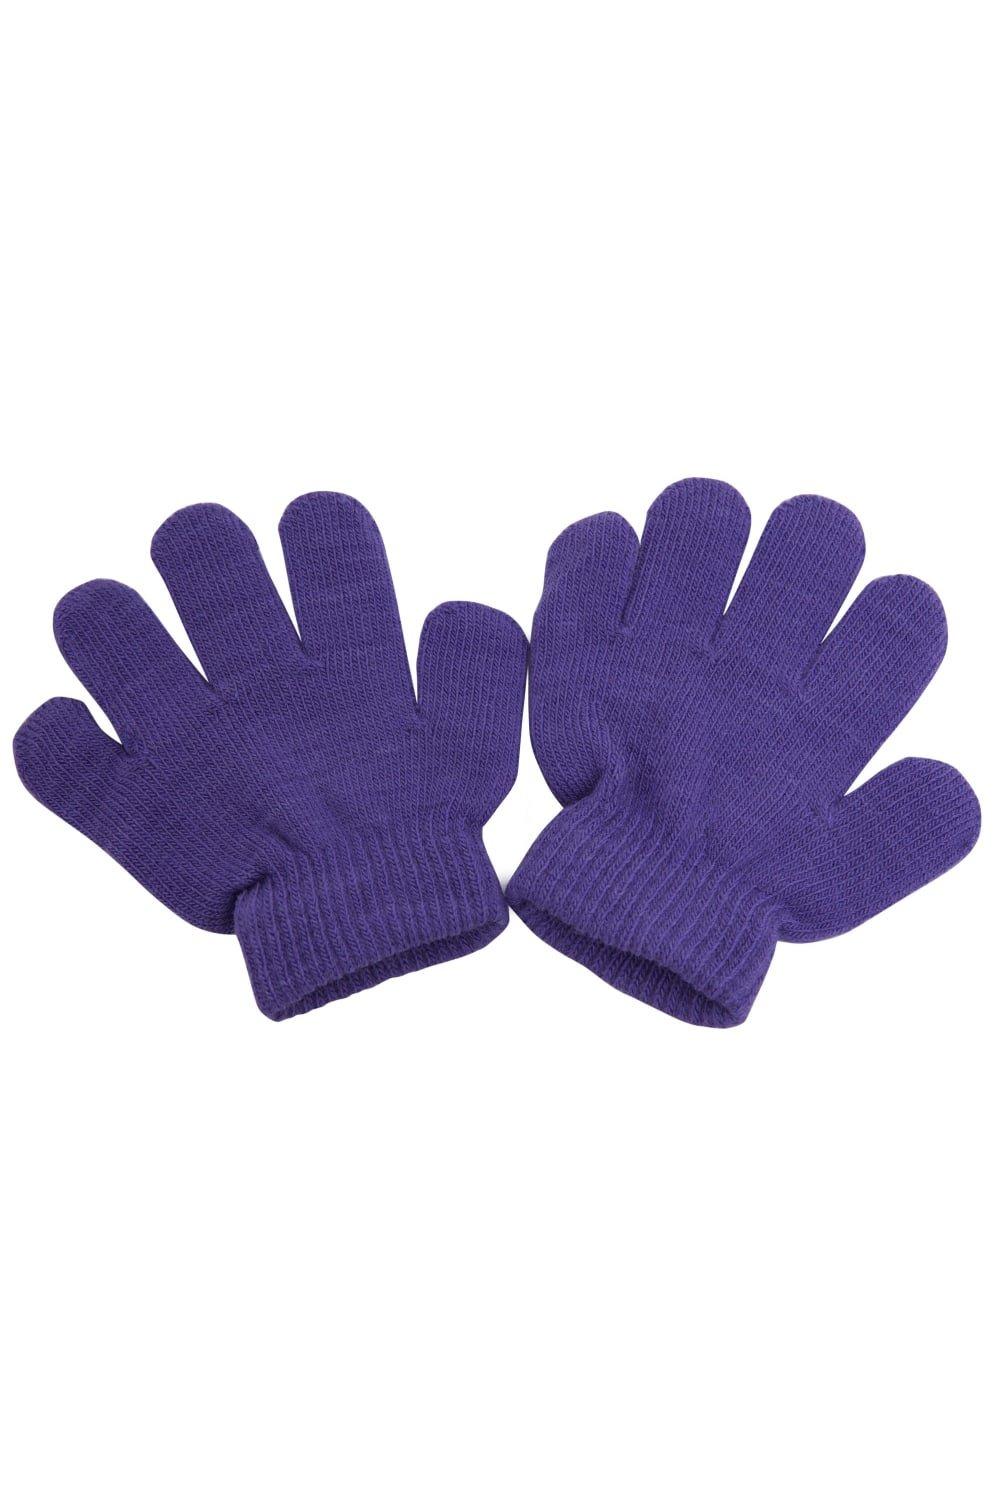 Зимние волшебные перчатки Universal Textiles, фиолетовый распродажа термовязаные зимние перчатки universal textiles черный